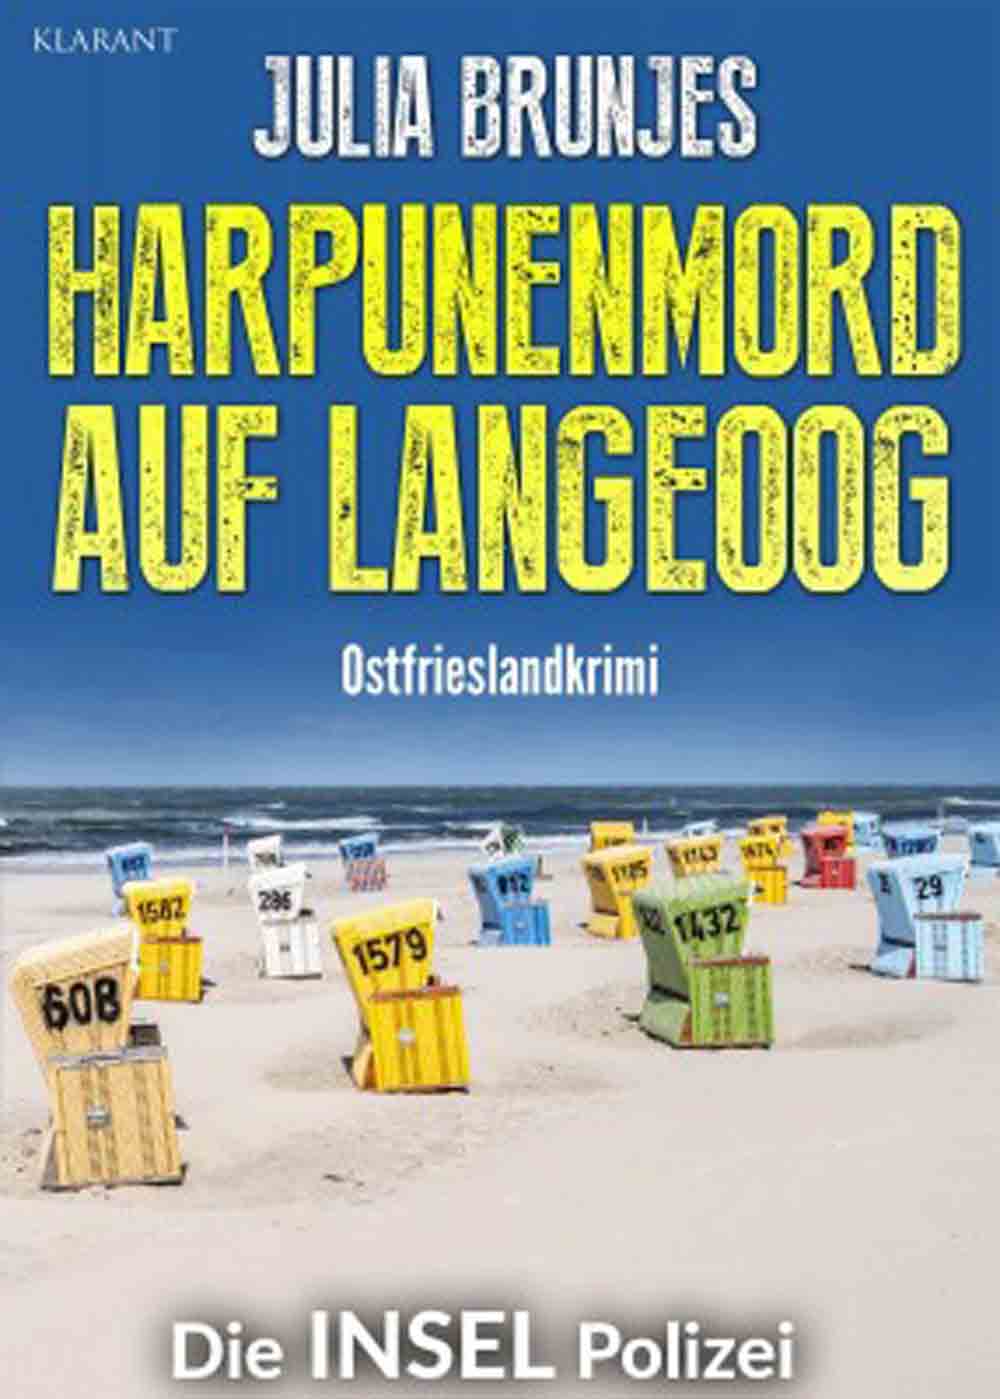 Lesetipps für Gütersloh, Ostfrieslandkrimi »Harpunenmord auf Langeoog« von Julia Brunjes im Klarant Verlag